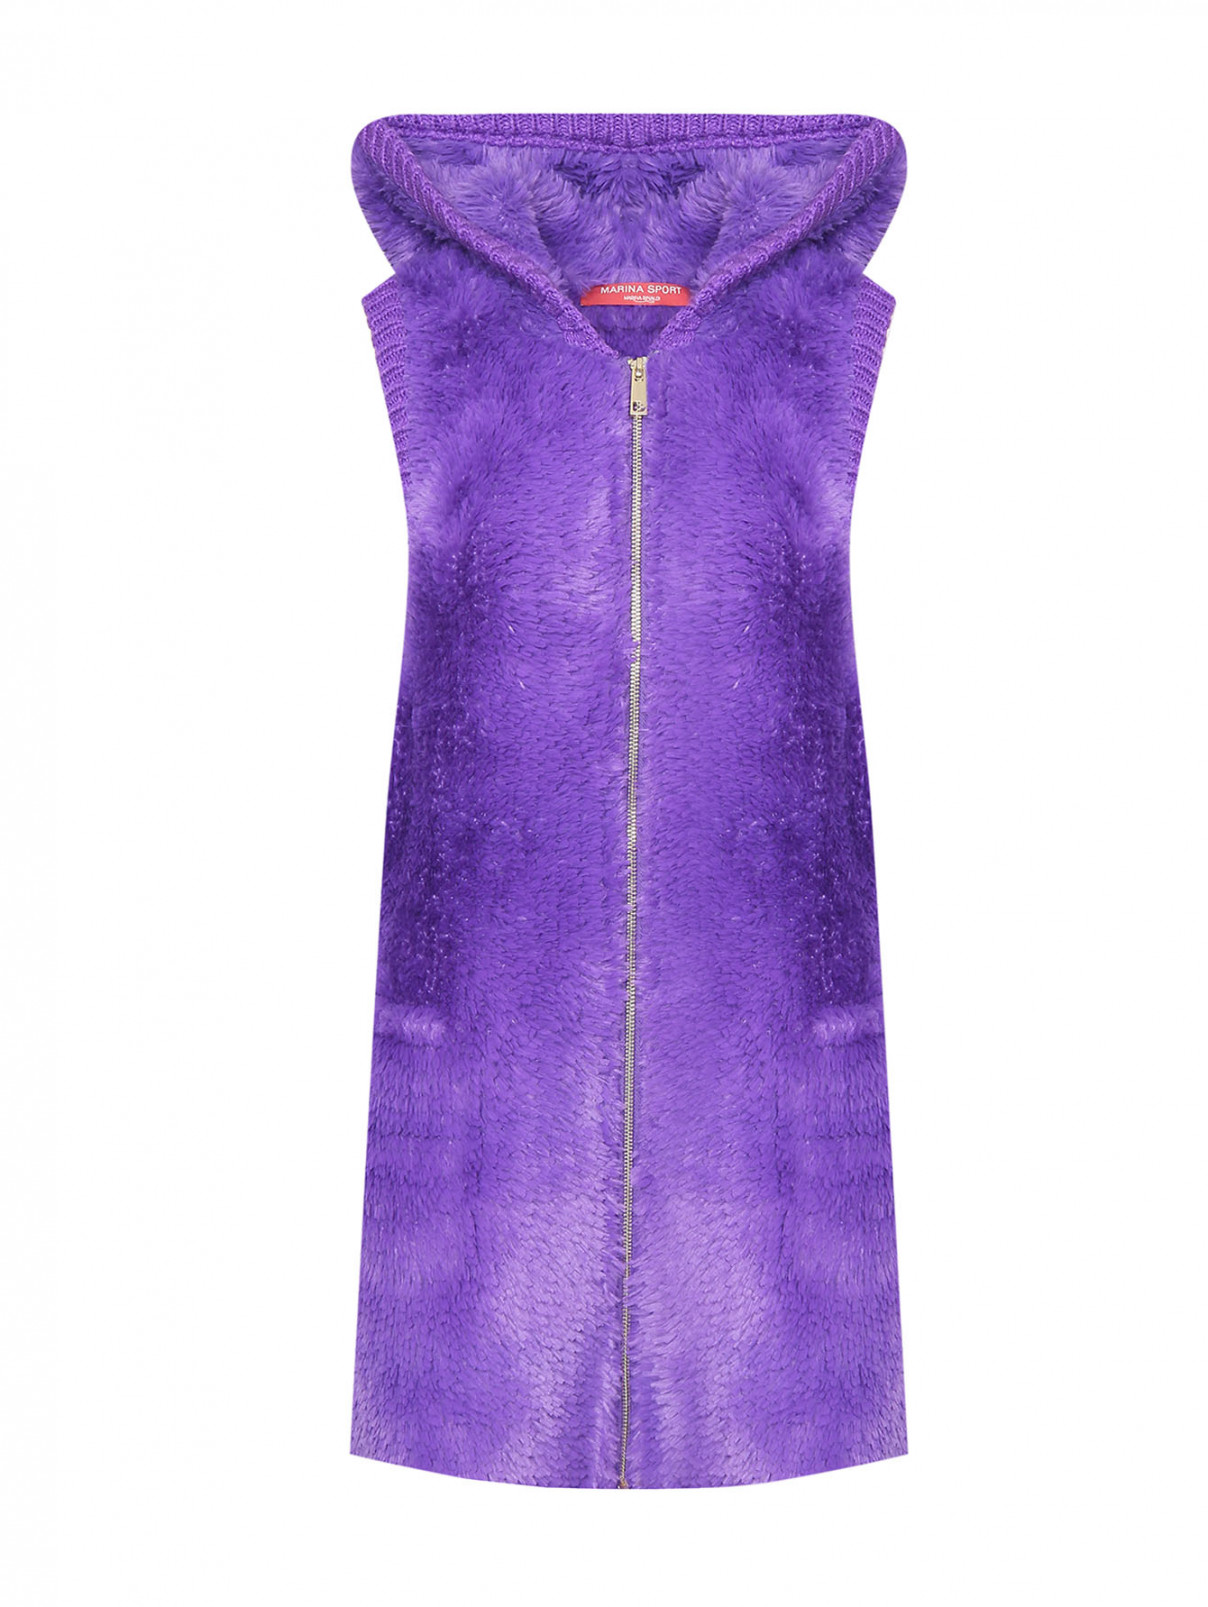 Жилет на молнии с капюшоном Marina Rinaldi  –  Общий вид  – Цвет:  Фиолетовый